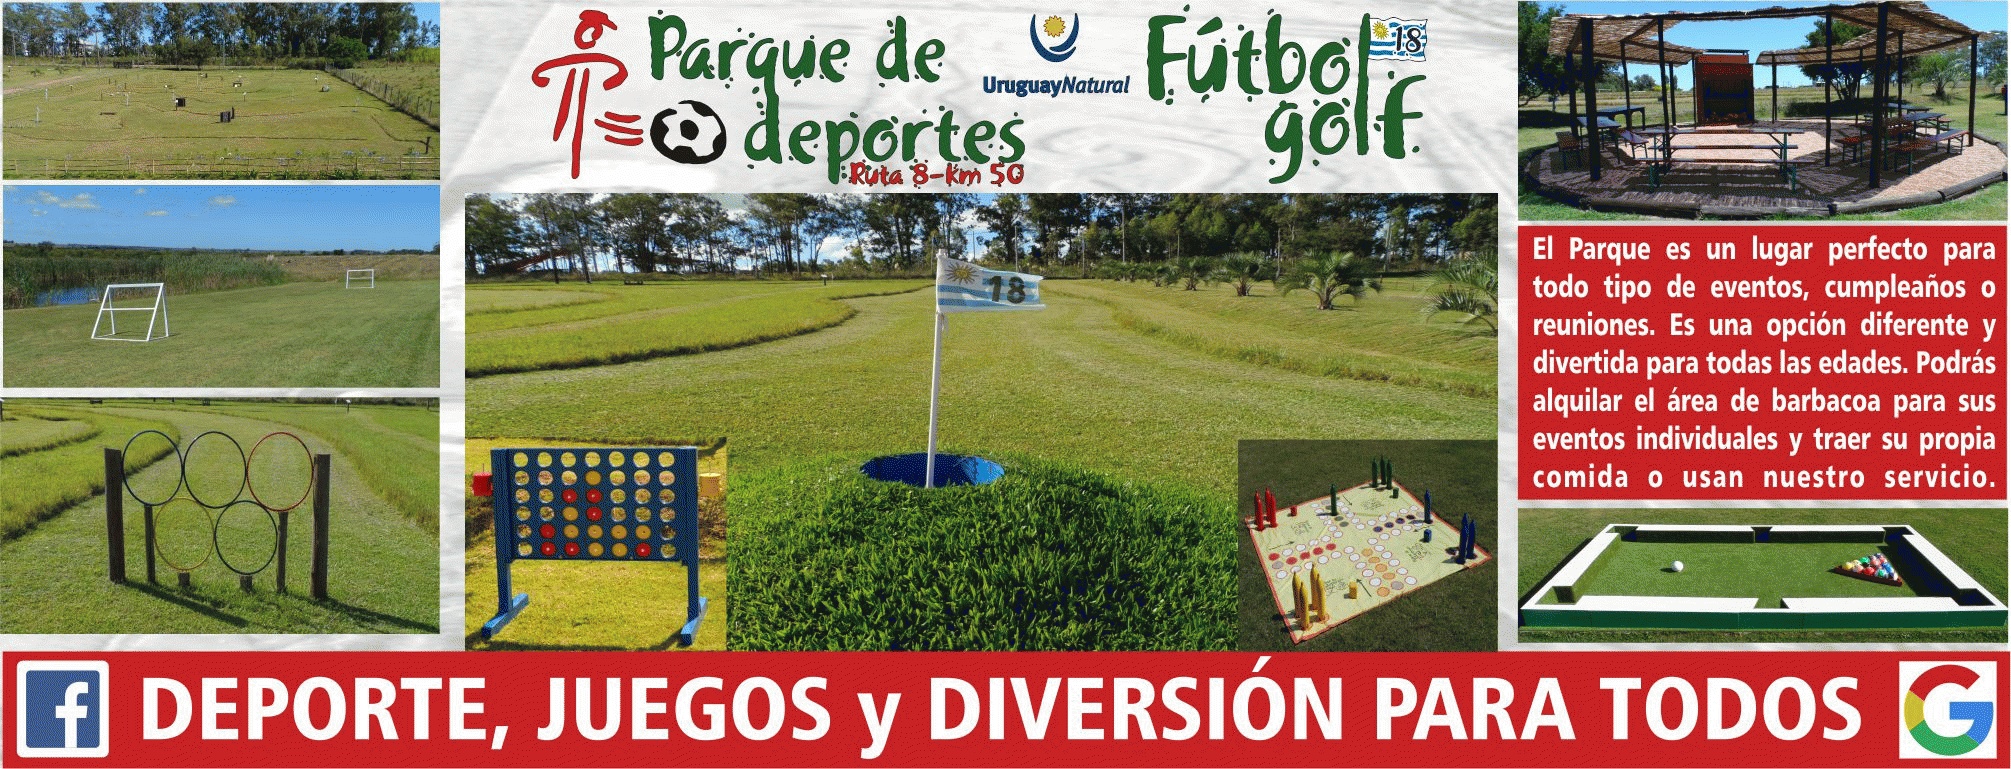 Investor / Darlehensgeber / Teilhaber für Fußballgolfanlage in Uruguay gesucht Gesuch 37588 Bild 1